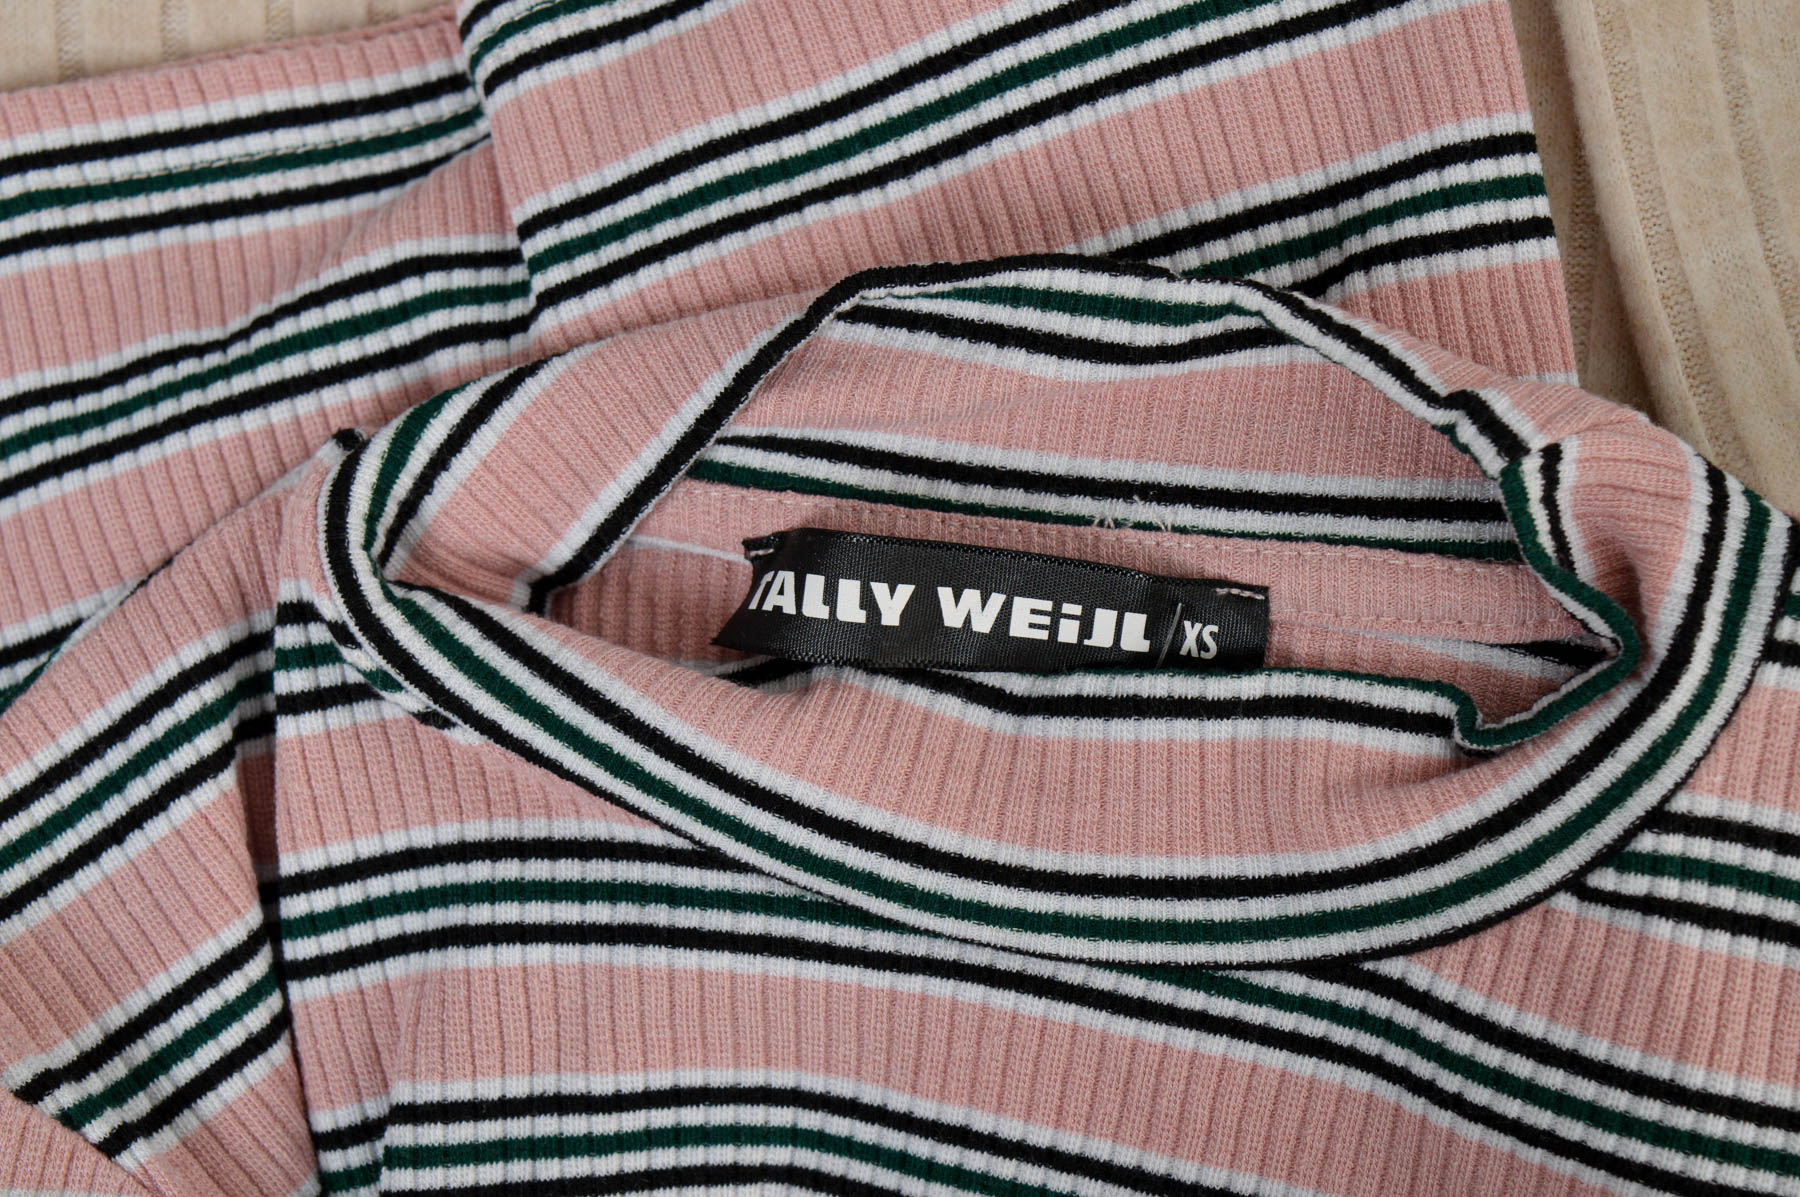 Bluza de damă - Tally Weijl - 2